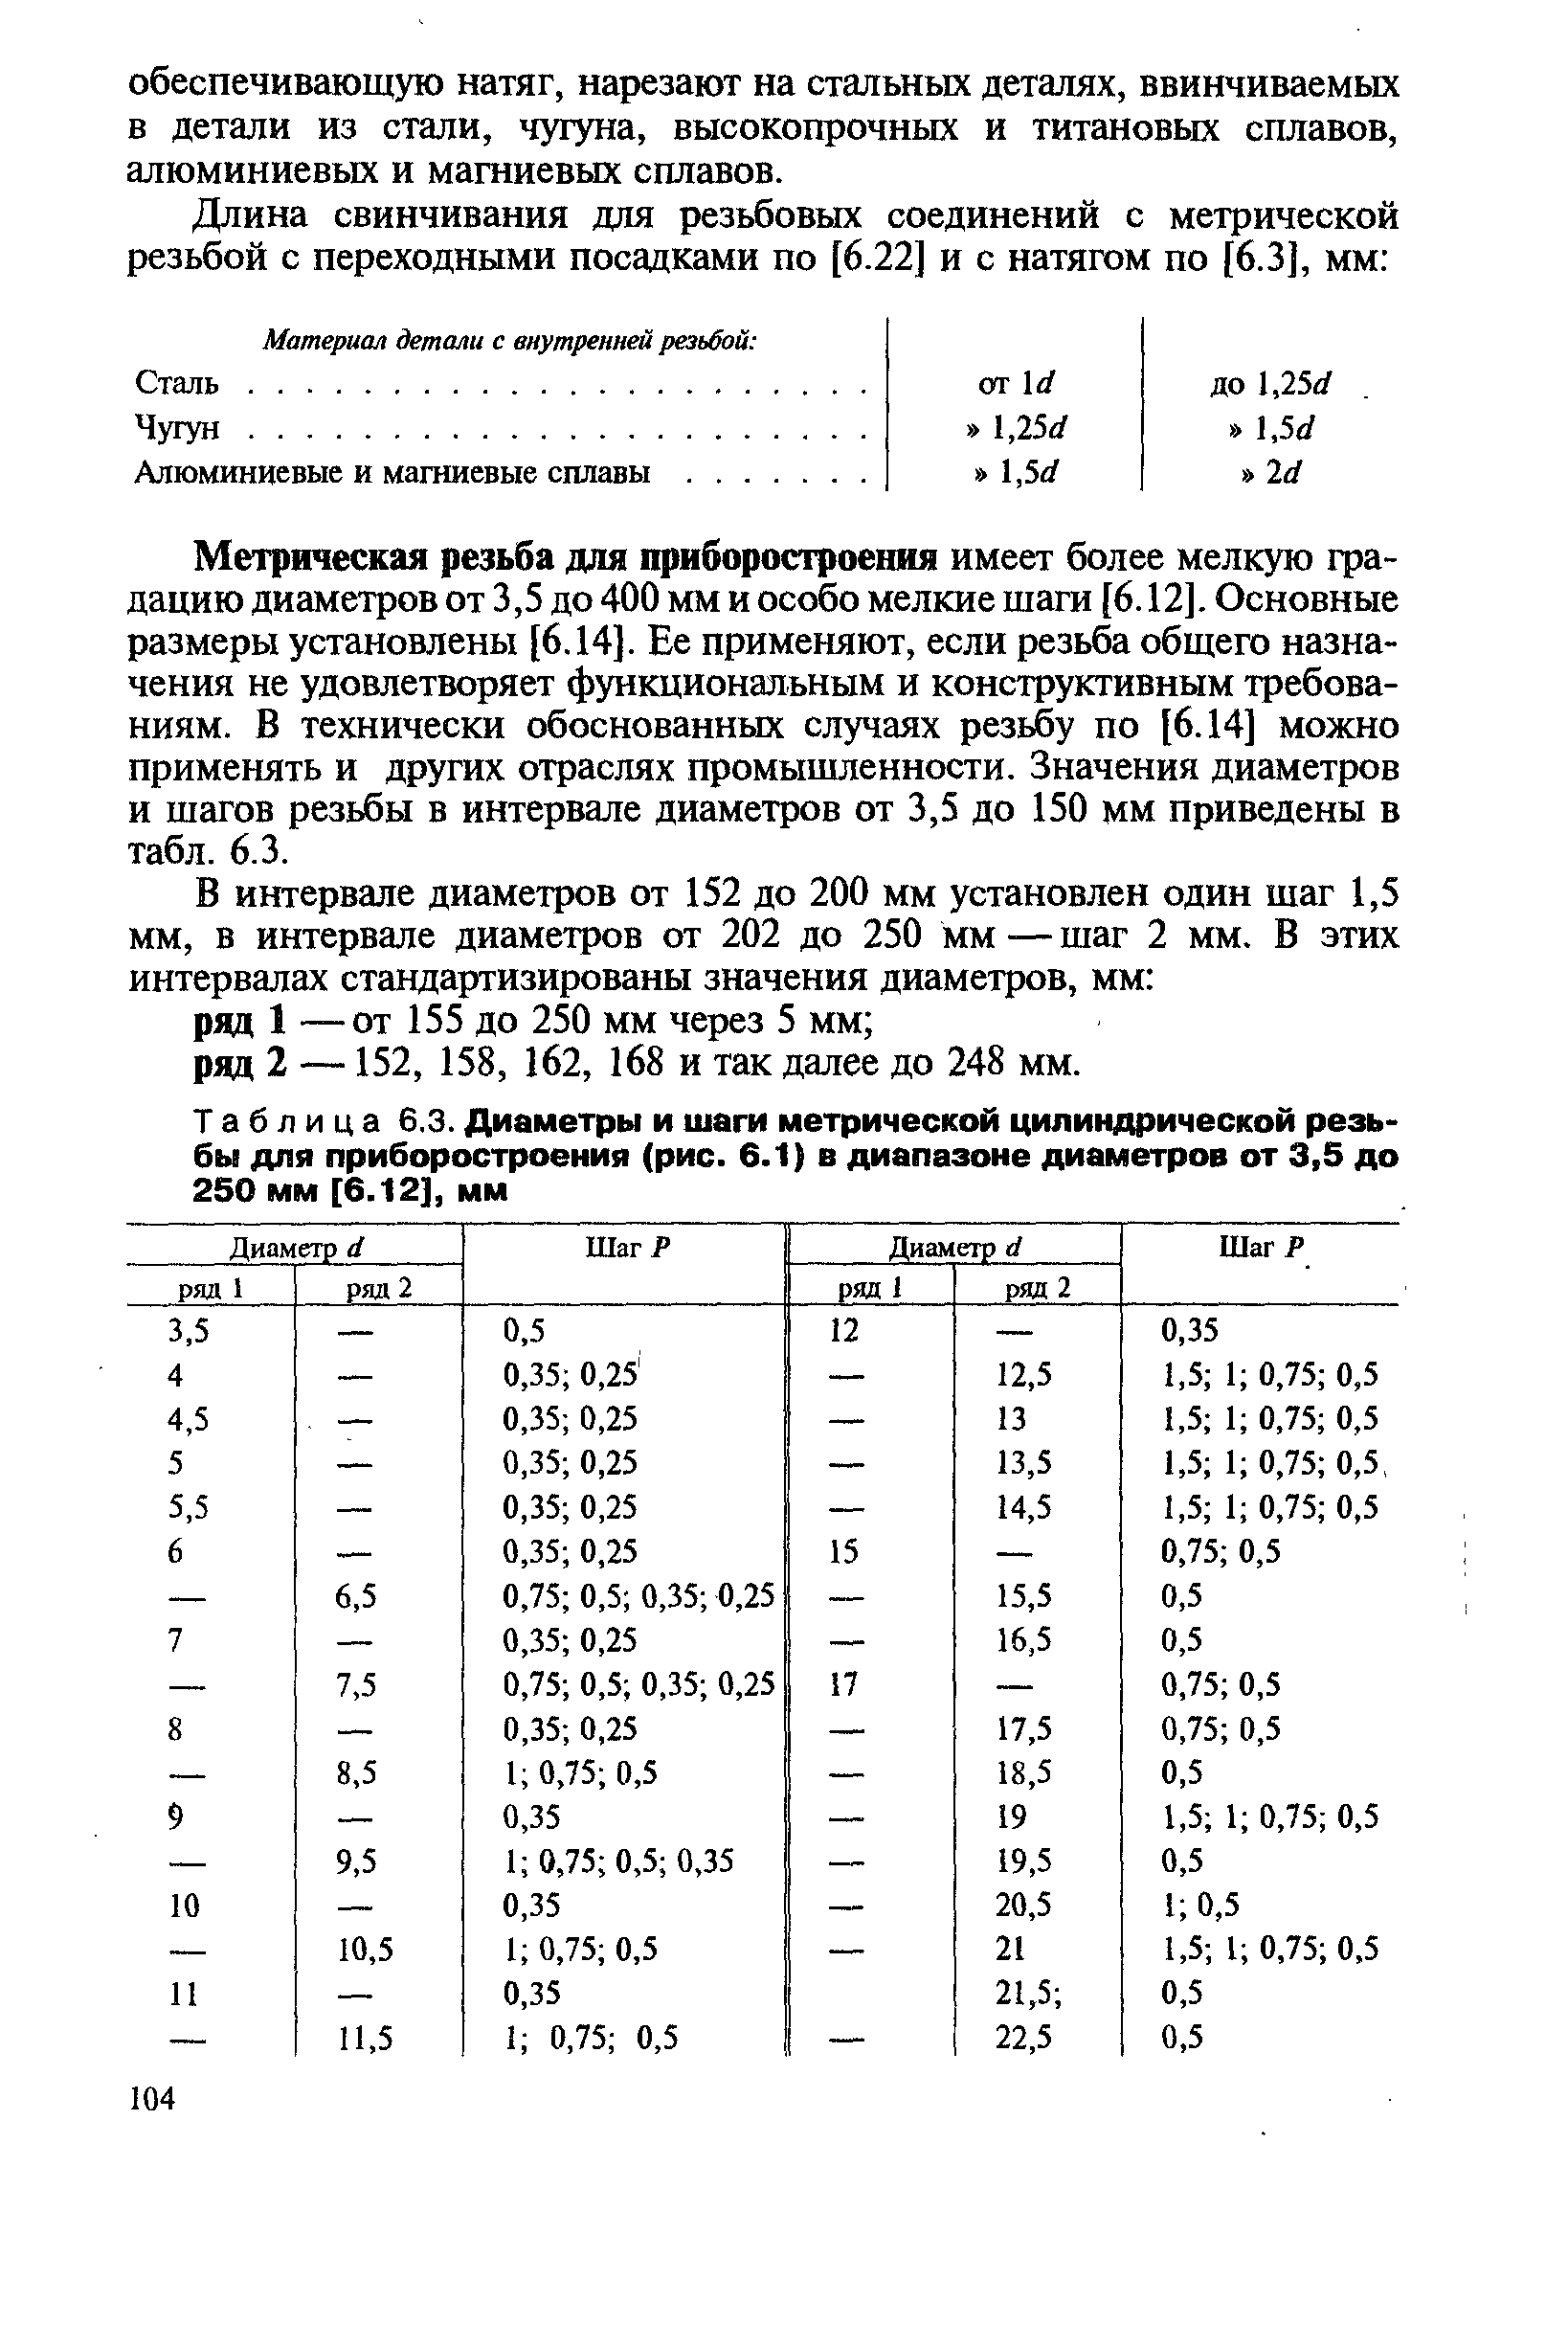 Таблица 6.3. Диаметры и шаги <a href="/info/472218">метрической цилиндрической резьбы</a> для приборостроения (рис. 6.1) в диапазоне диаметров от 3,5 до 250 мм [6.12], мм
